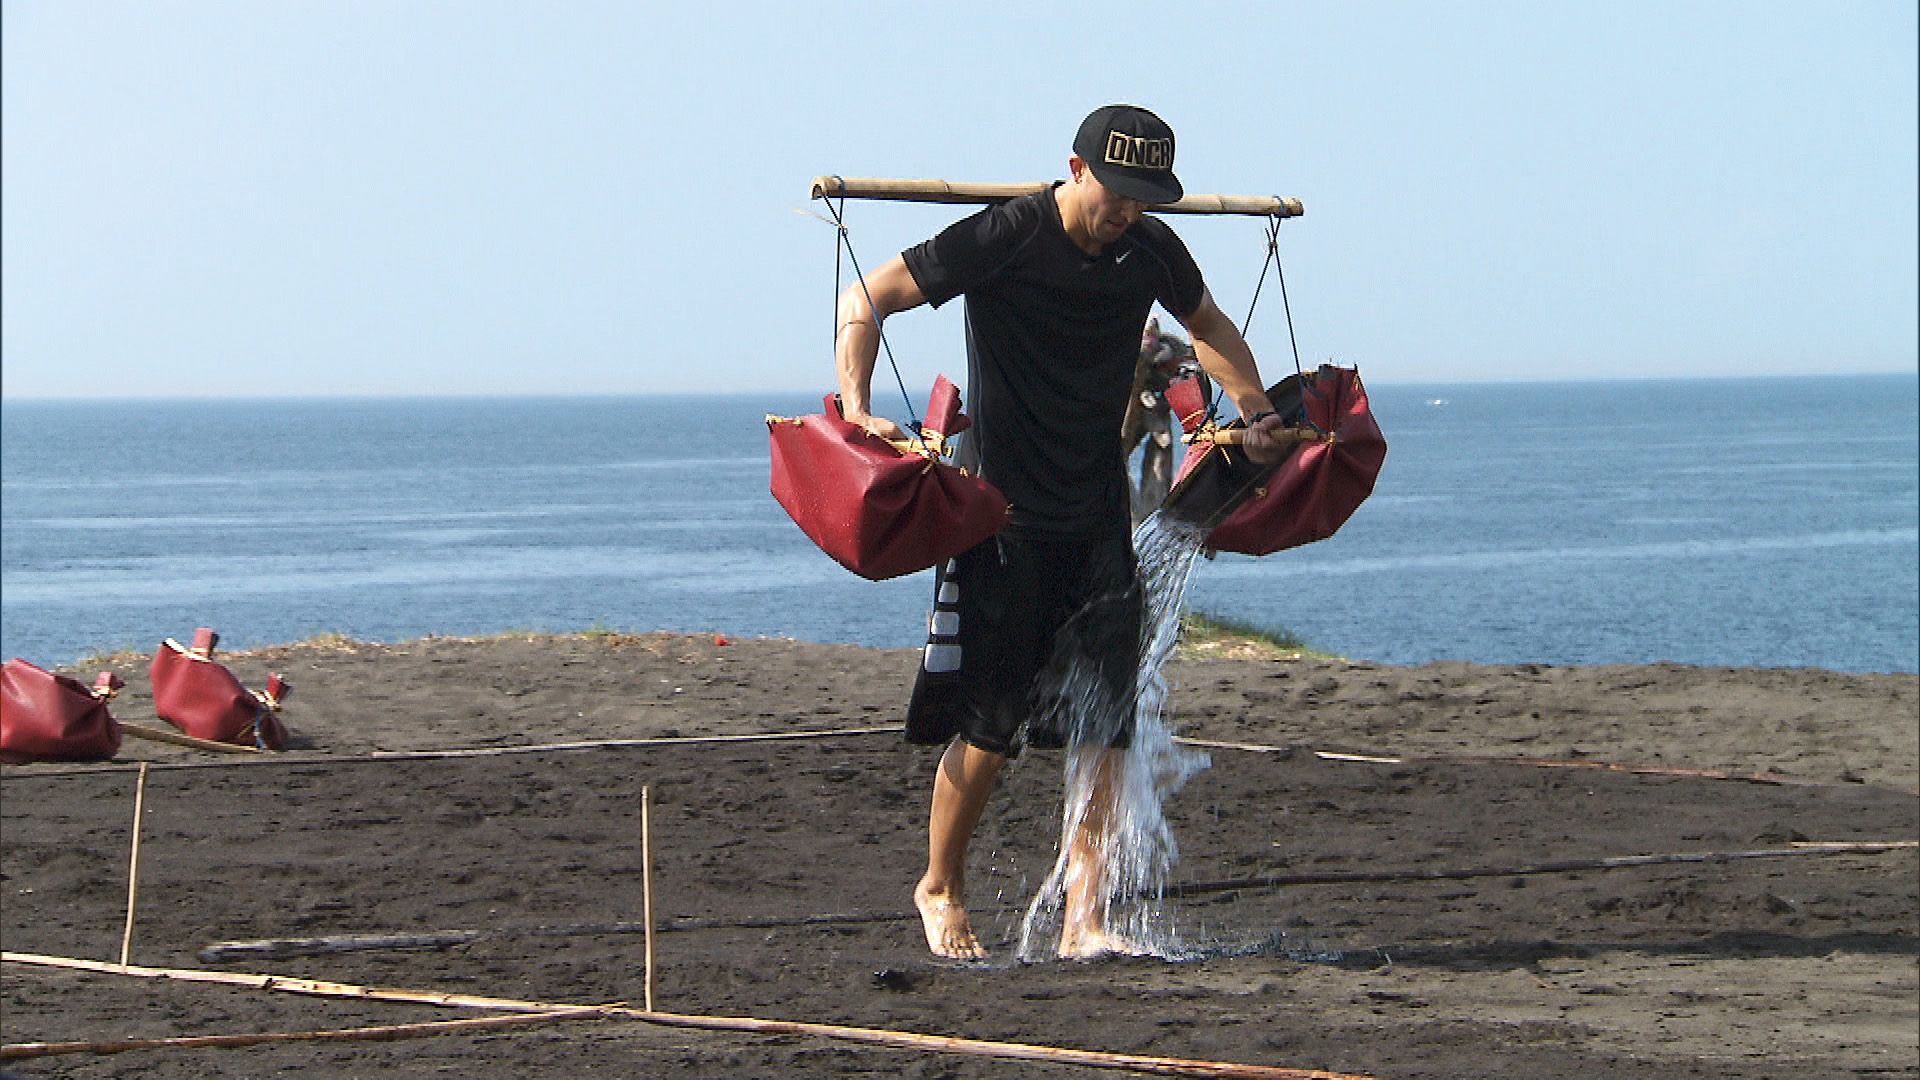 Matt helps a Balinese salt farmer by carrying water from the ocean.